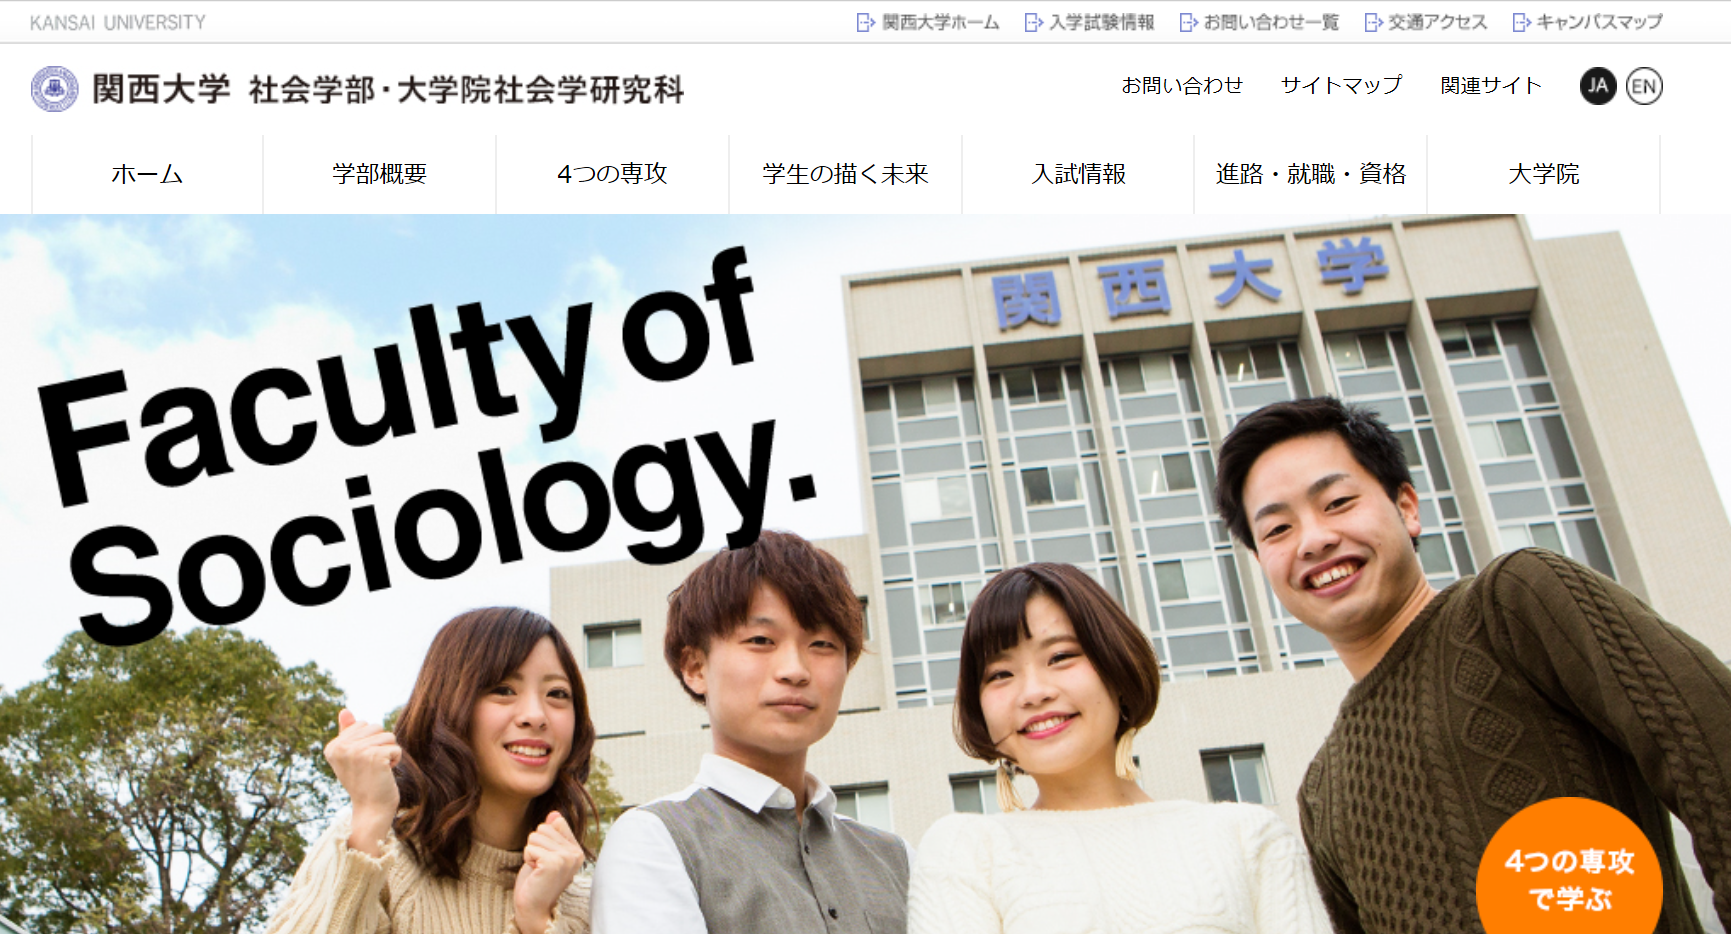 関西大学 社会学部